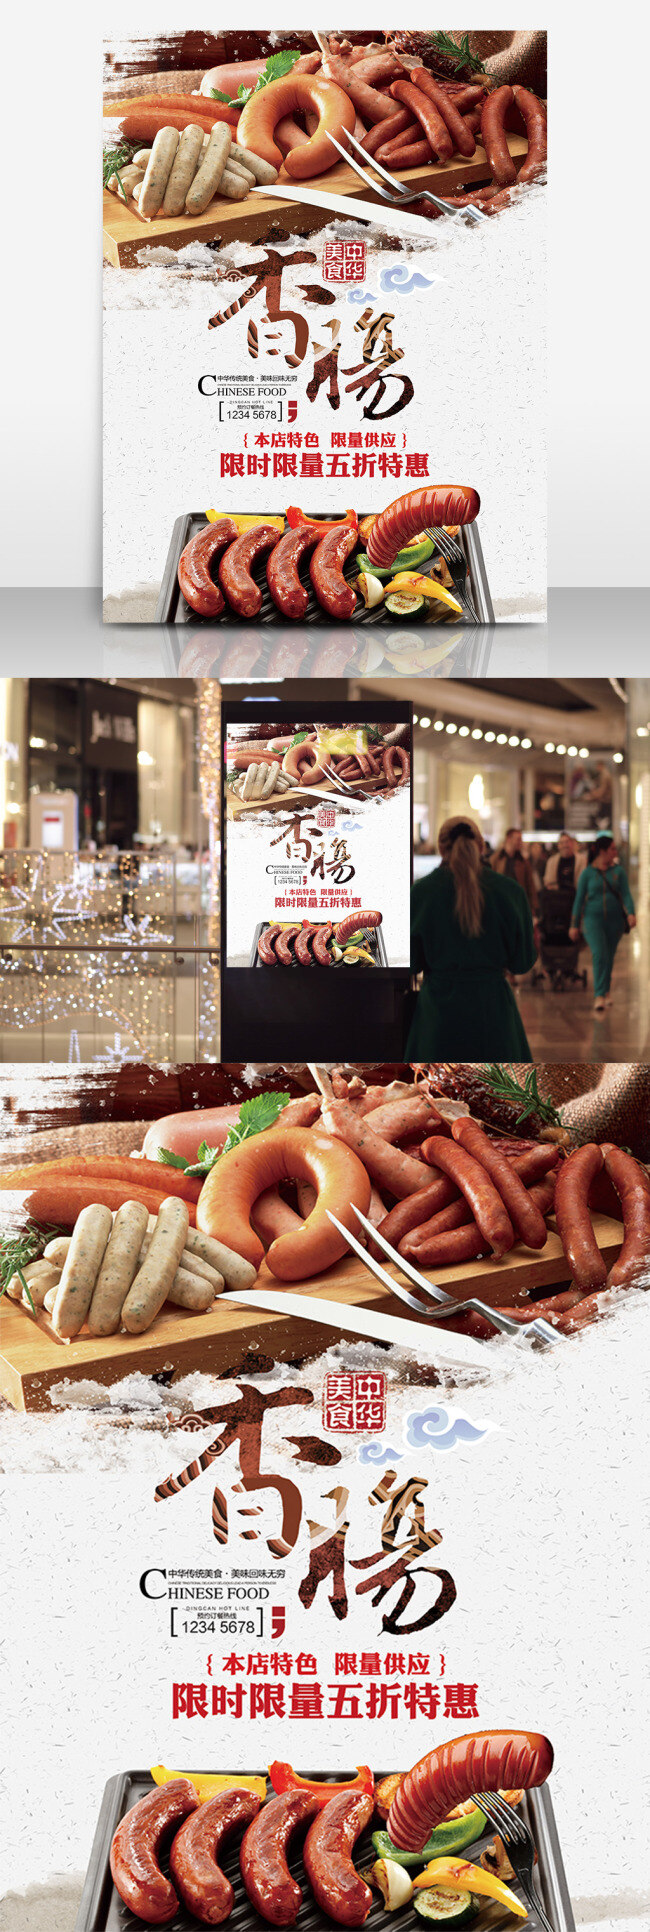 烤 香肠 美食 促销 海报 烤香肠 肠子 中国风 餐饮 饭店 展板